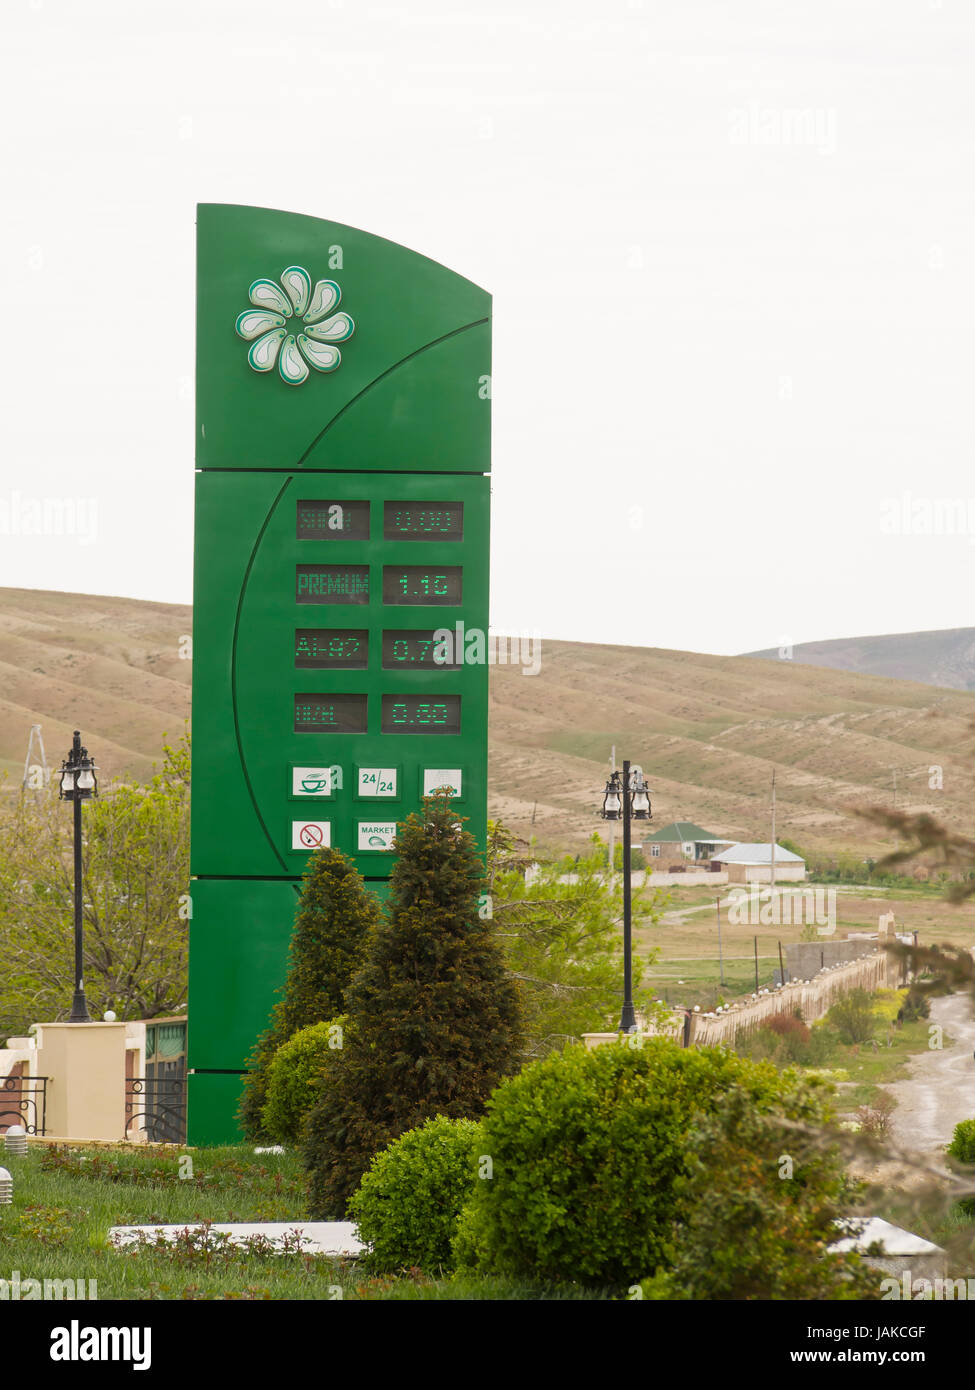 Tankstelle und Zeichen in der Nähe von cengi Dorf auf der Autobahn M4 westlich von Baku Aserbaidschan Azpetrol Firma Stockfoto